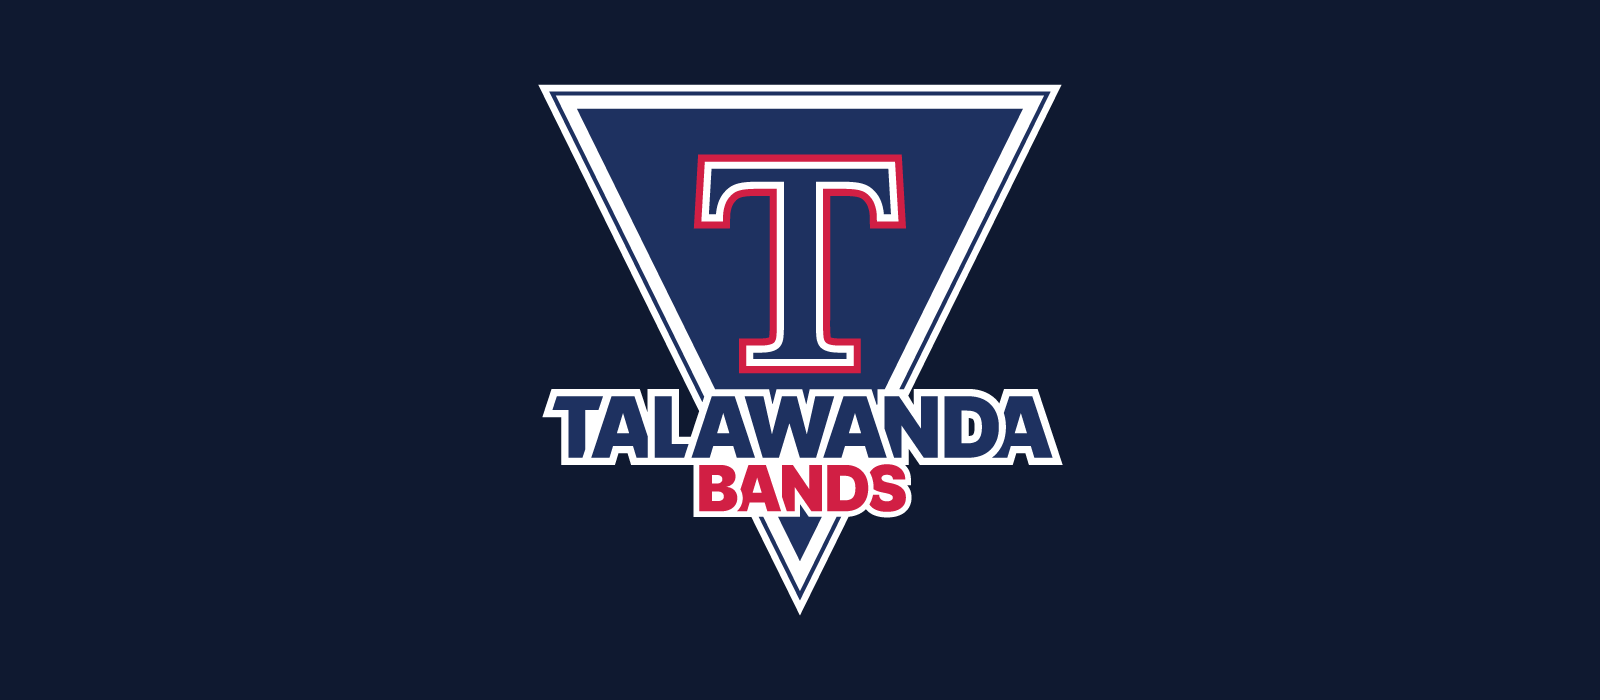 talawanda bands logo